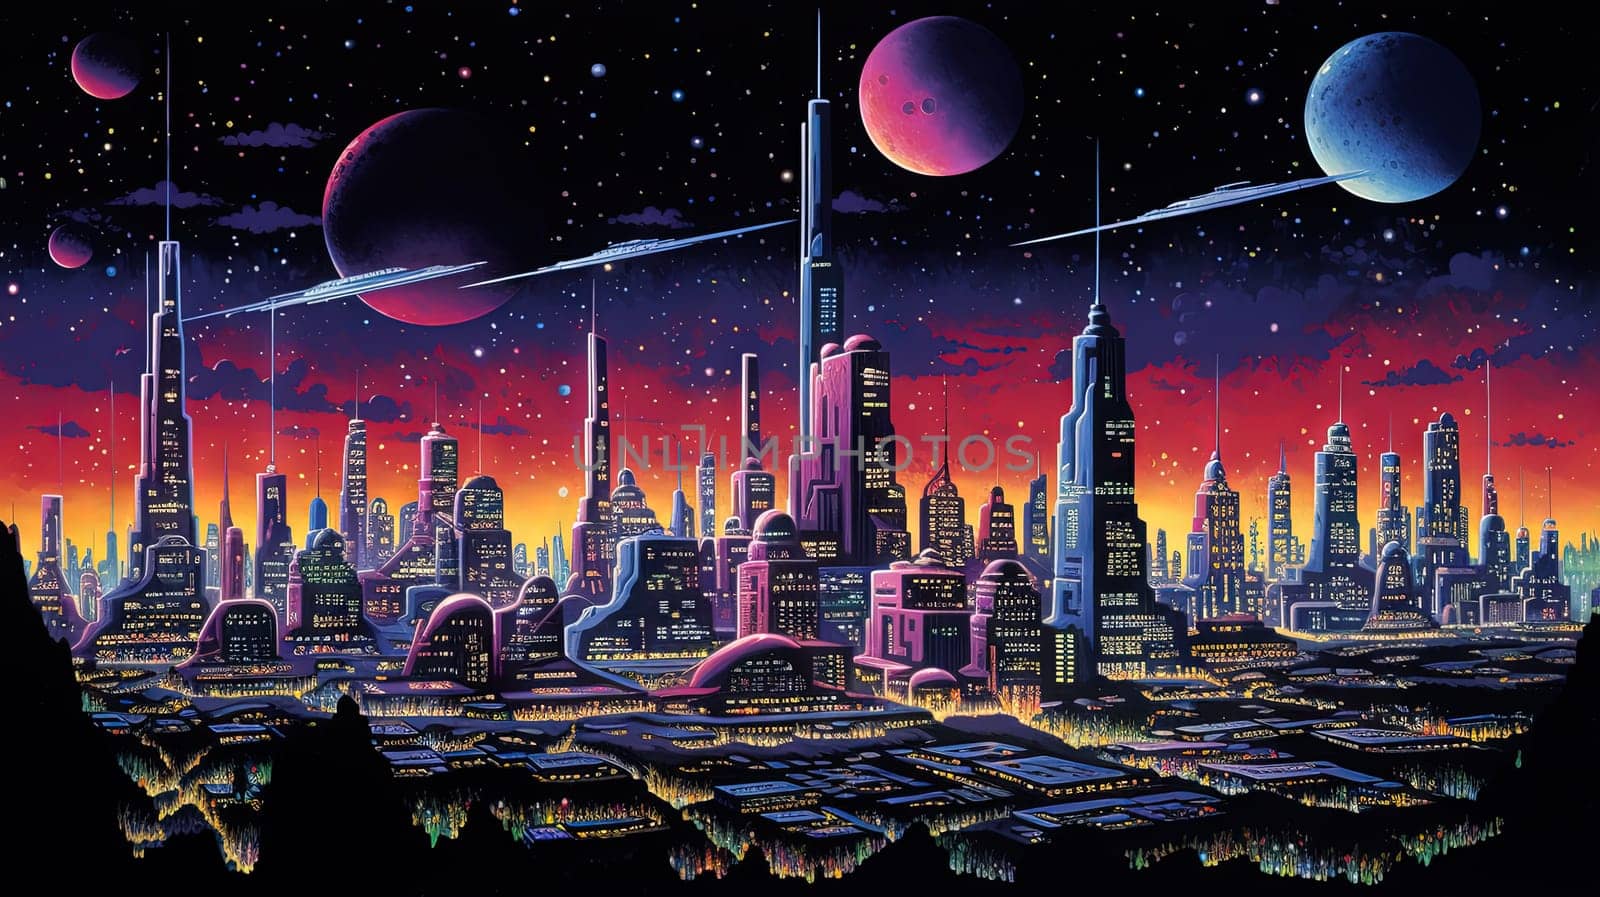 Retro futuristic city in the old school sci-fi art scene. Retro space landscape with city. Generated AI